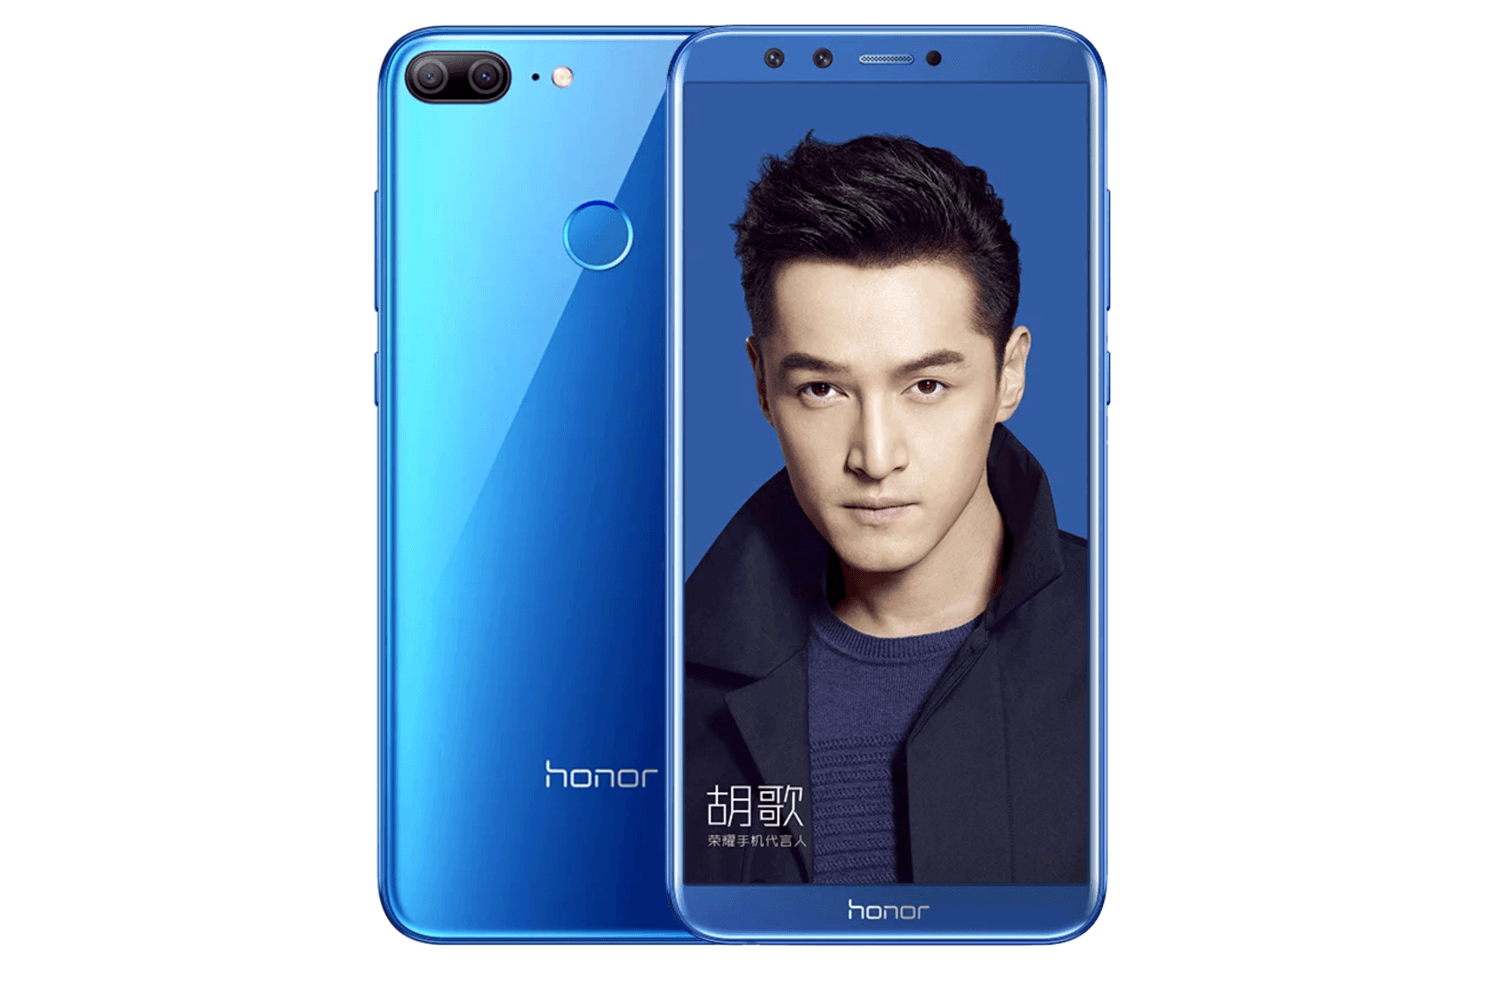 Huawei представила смартфон Honor 9 Lite с четырьмя камерами за $180